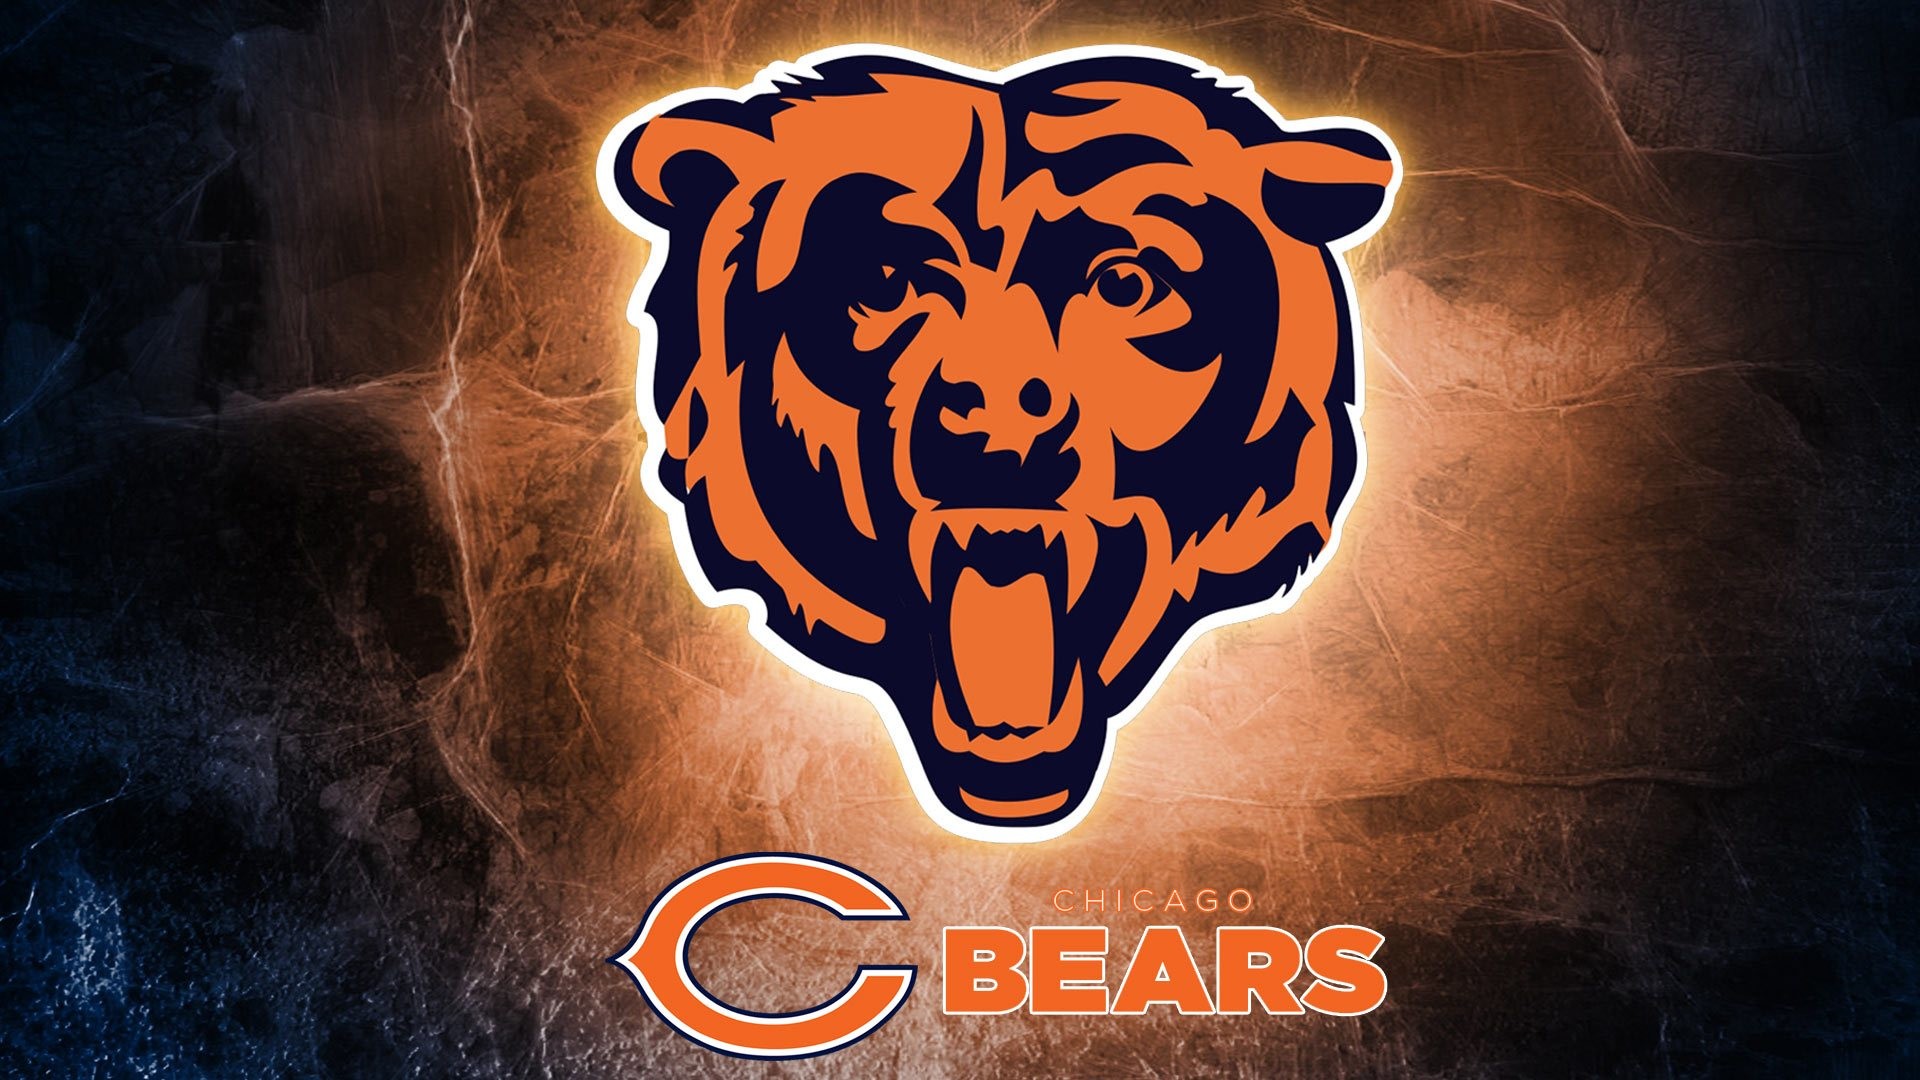 1920x1080 Chicago Bears logo wallpaper.